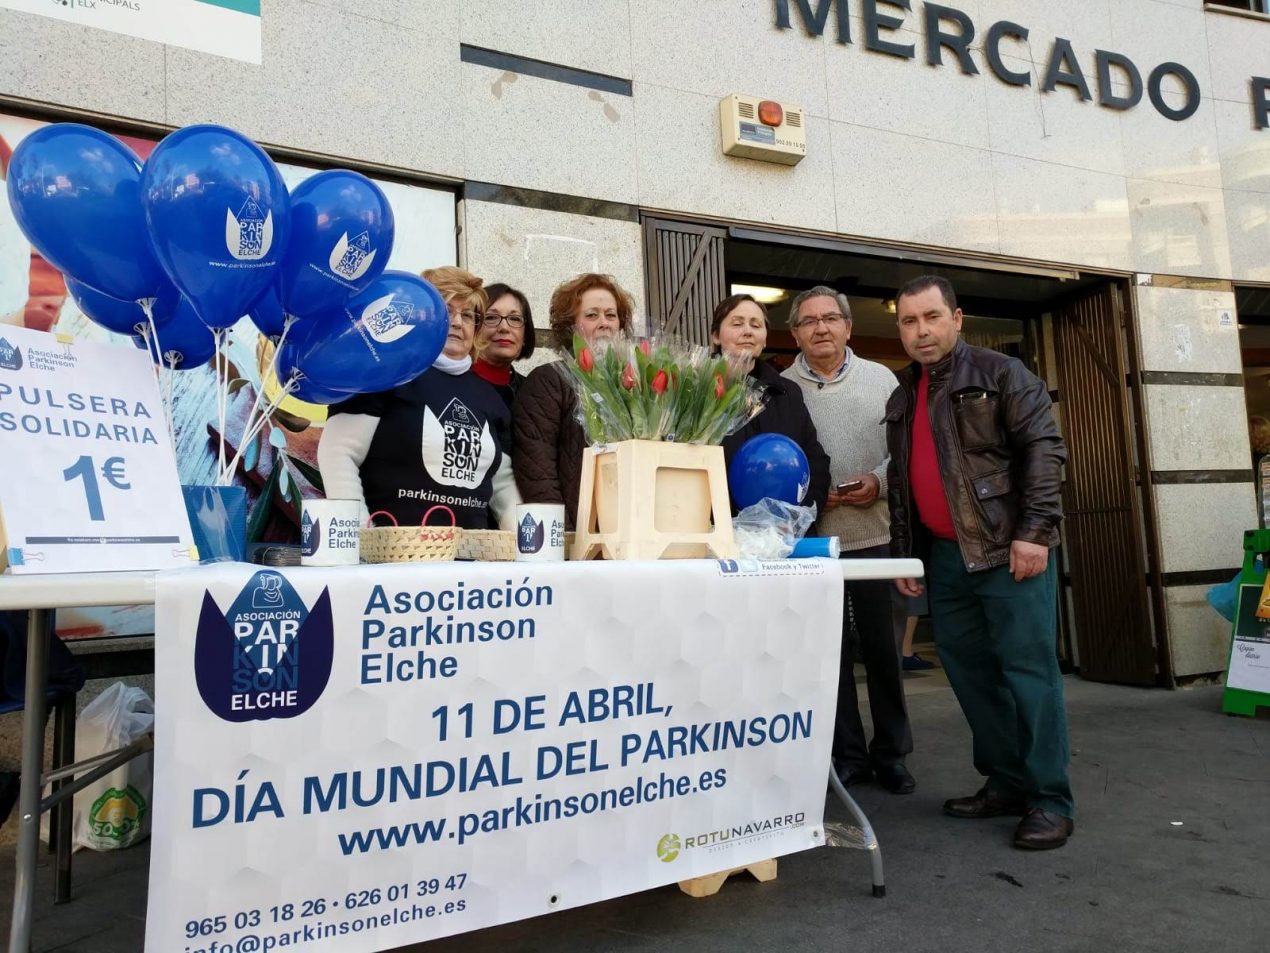 Día Mundial del Parkinson, 11 de abril de 2019 – Plaza de Barcelona